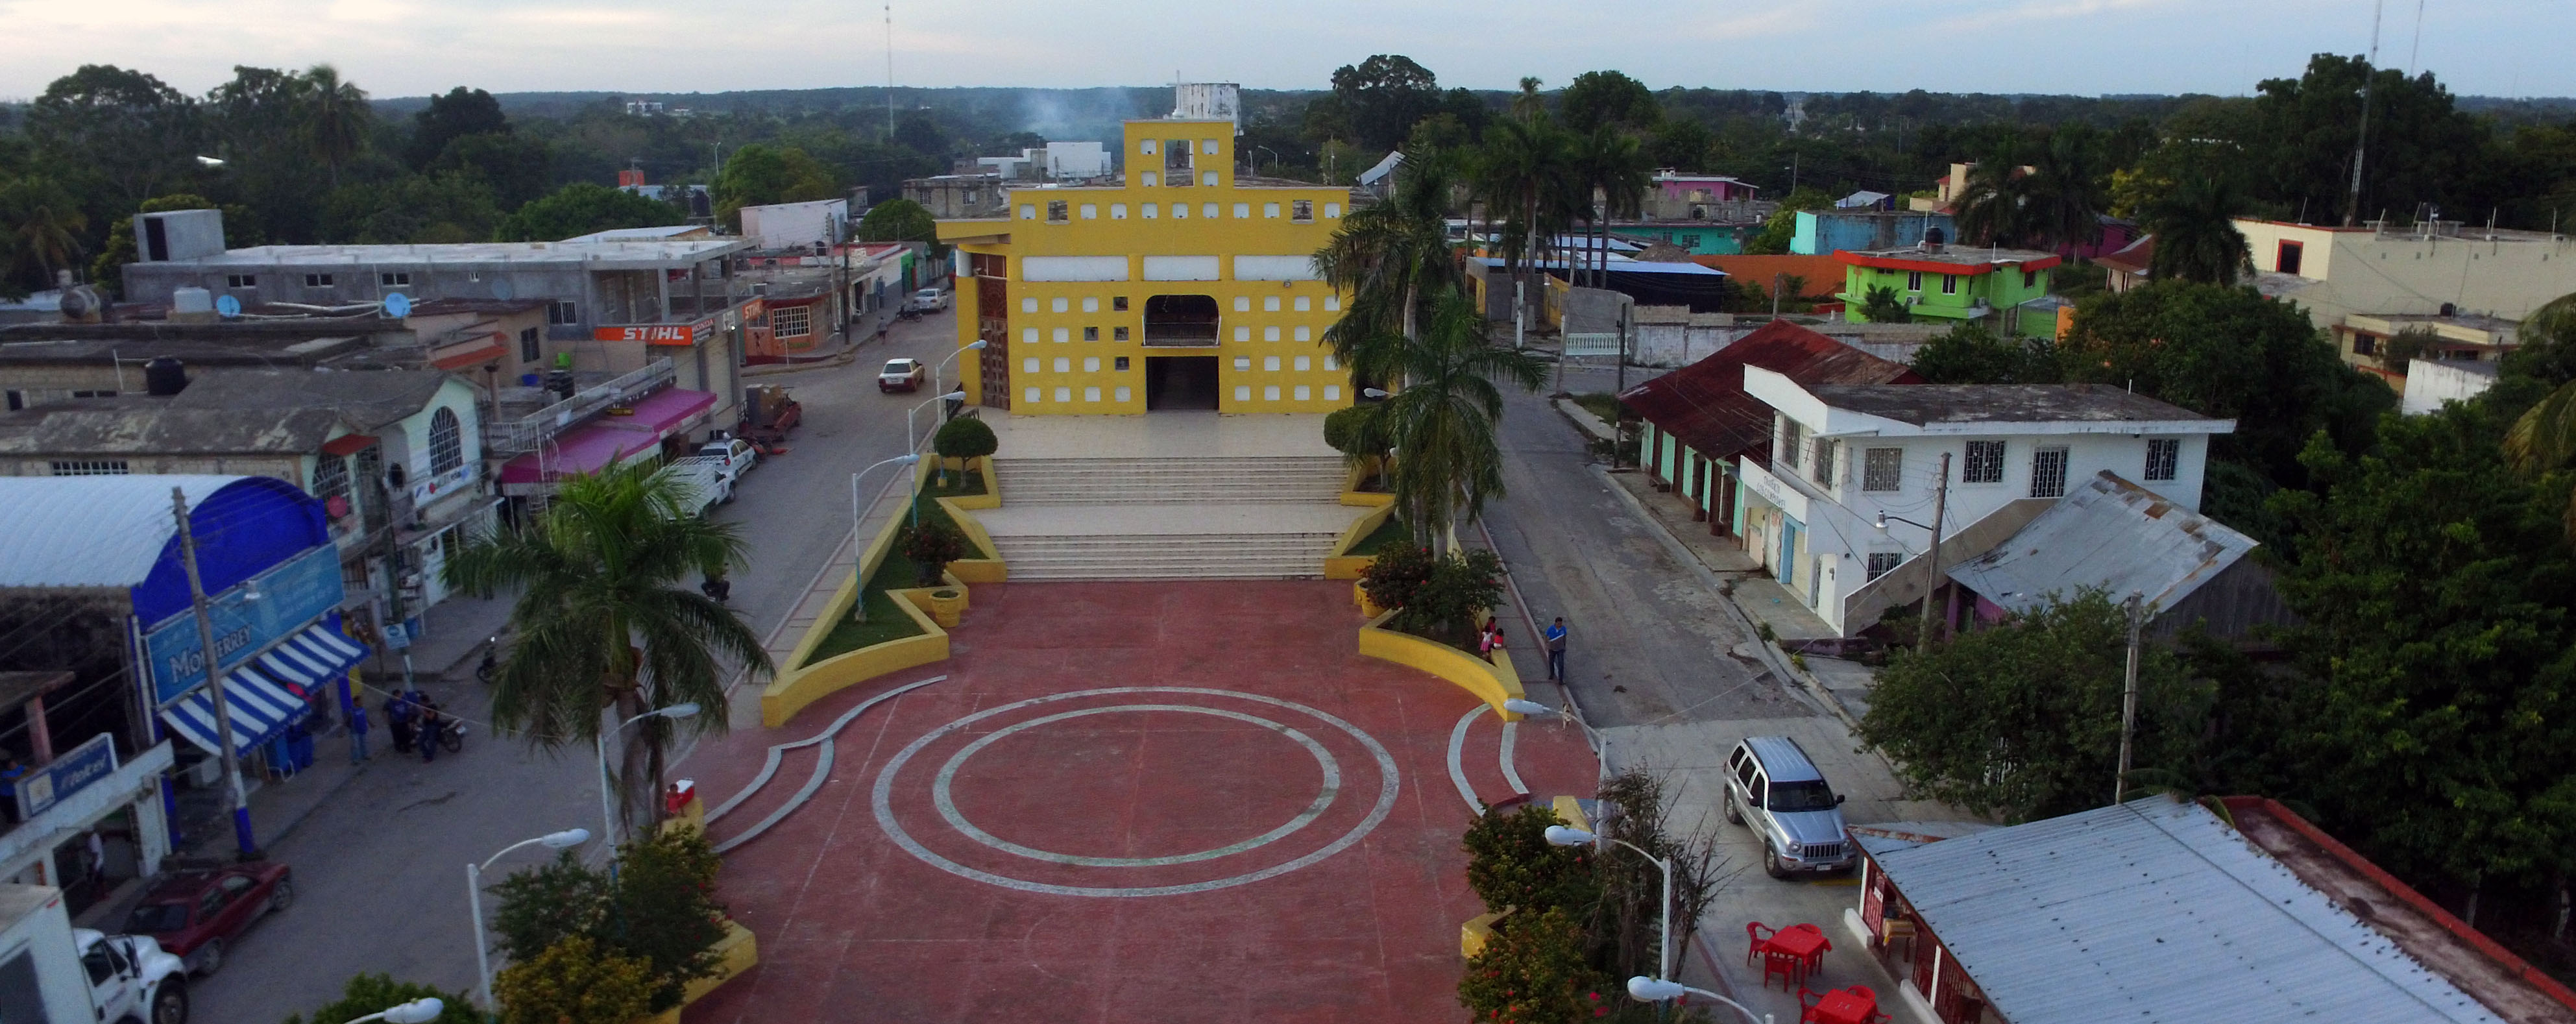 Plaza del municipio de Candelaria, Campeche.